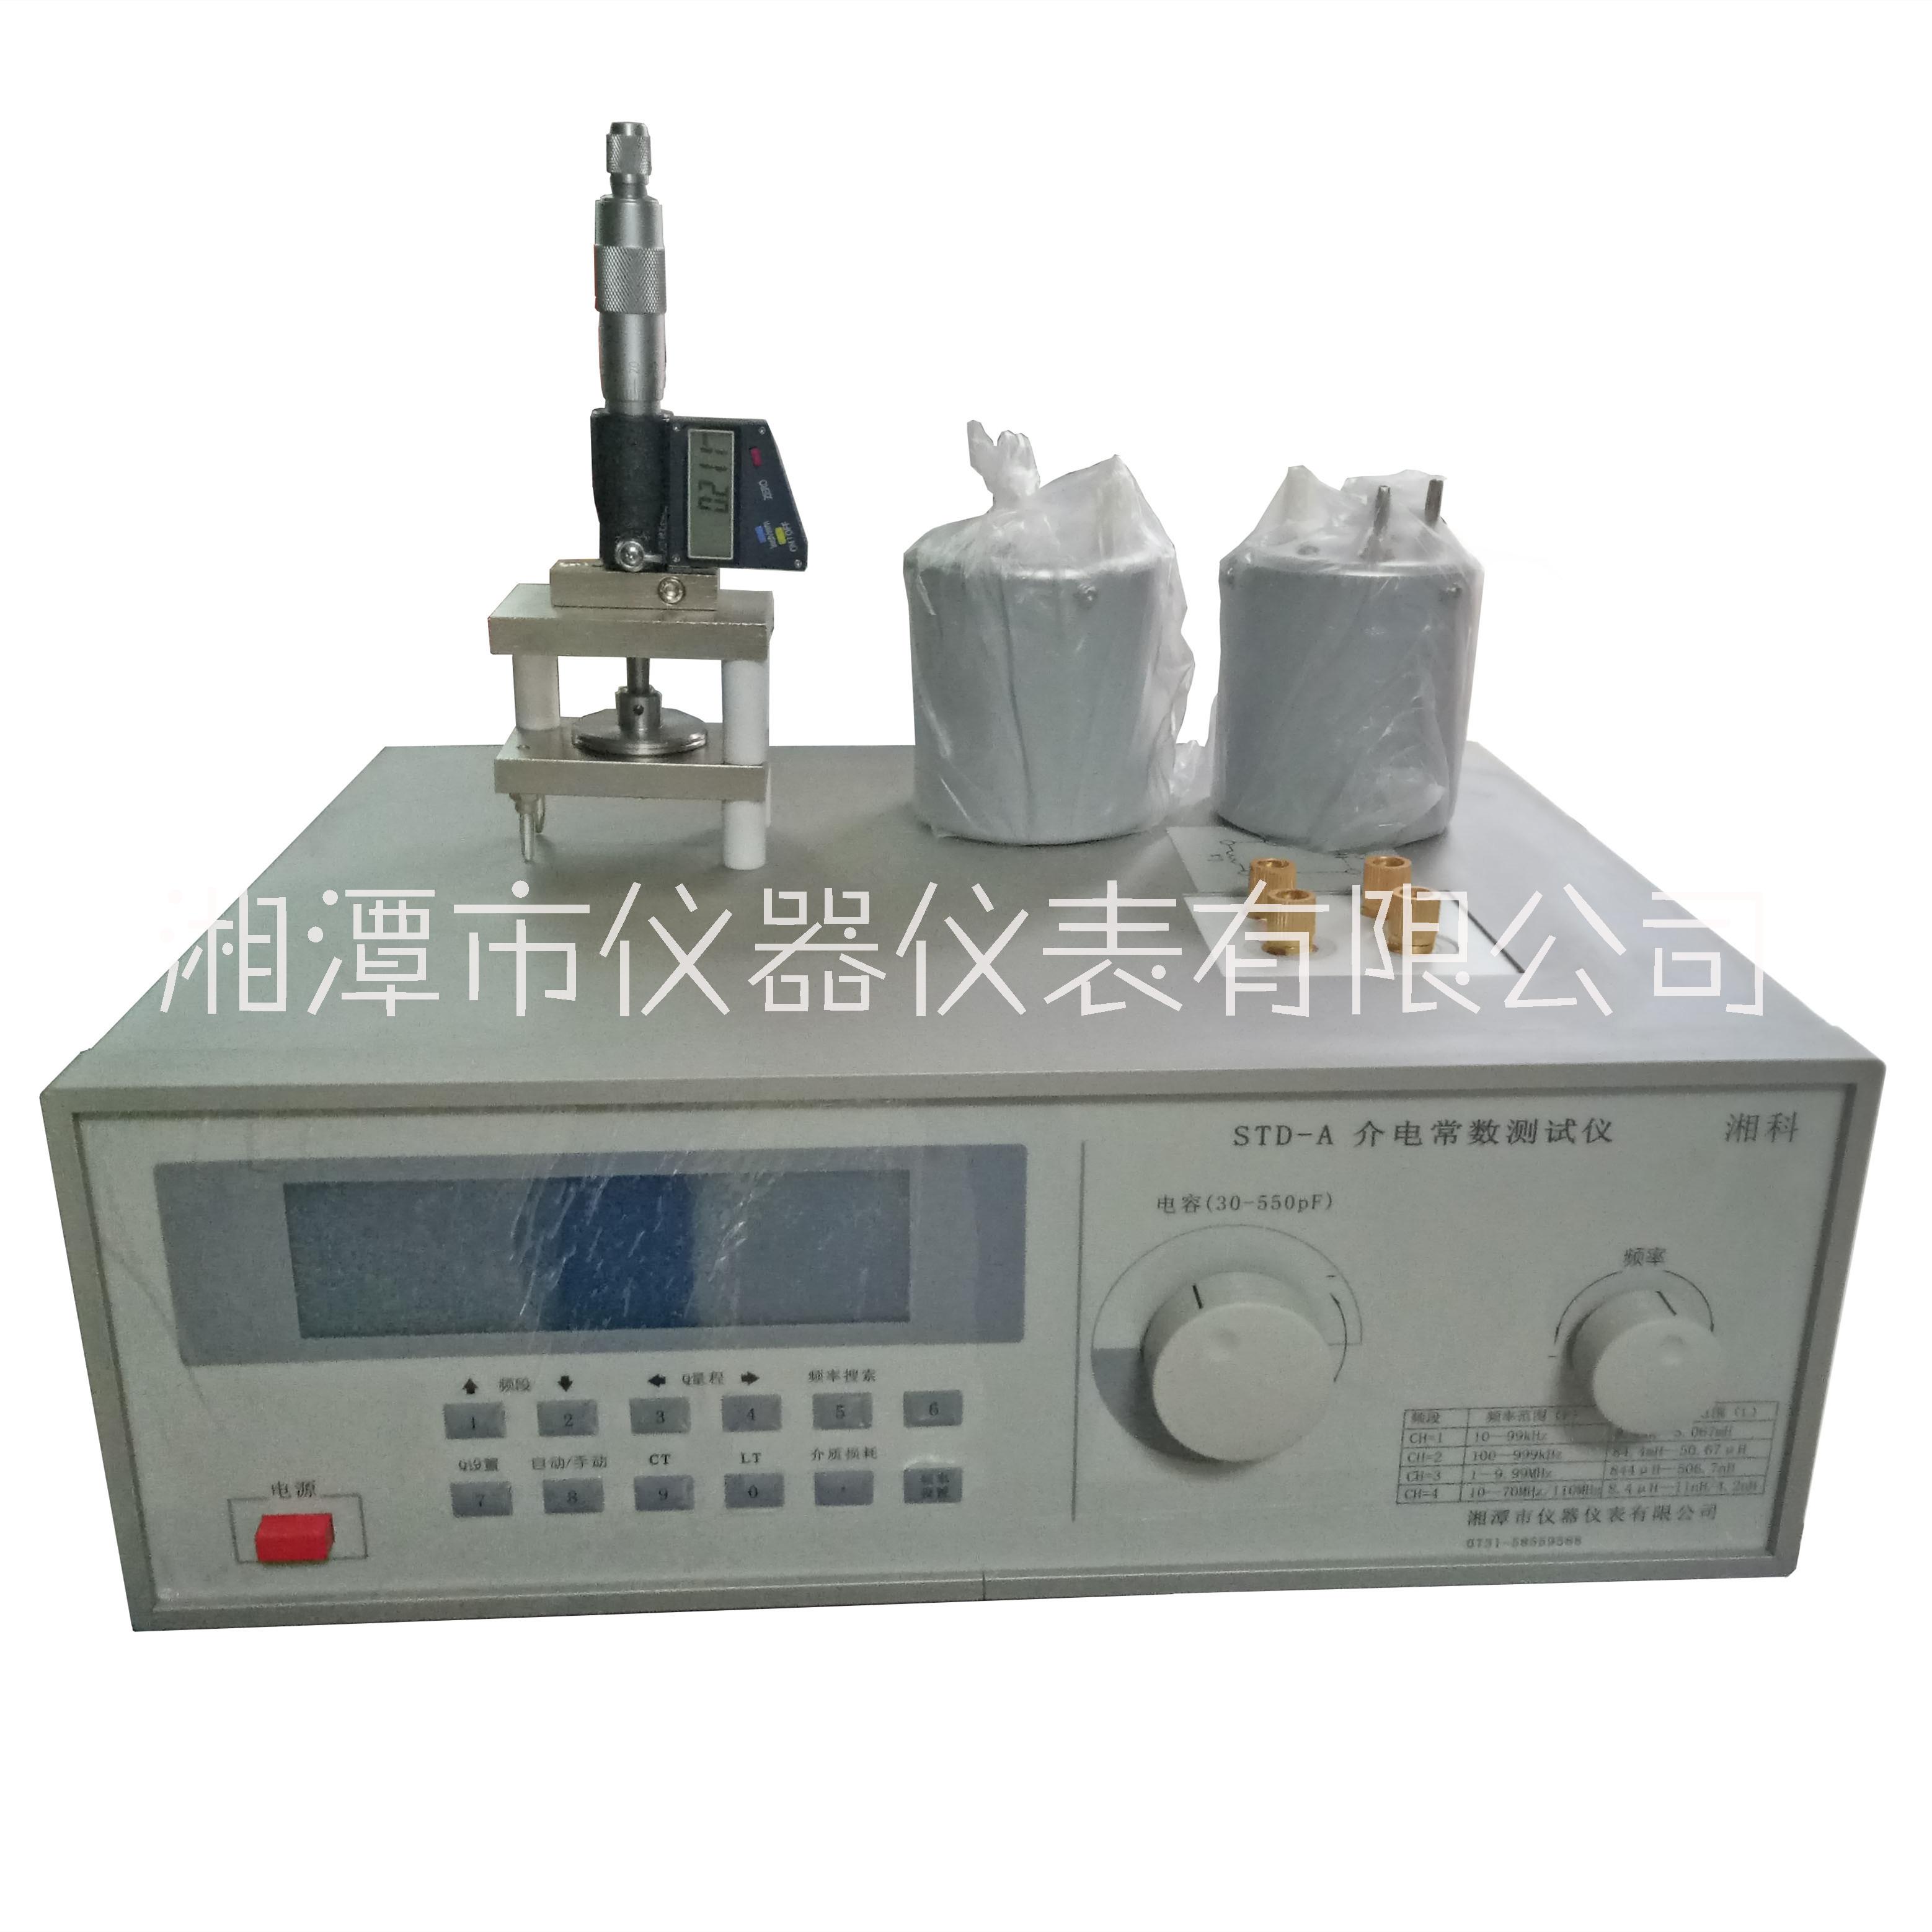 STD-A介电常数测试仪,介电常数和介质损耗测试仪 湘潭湘科供应